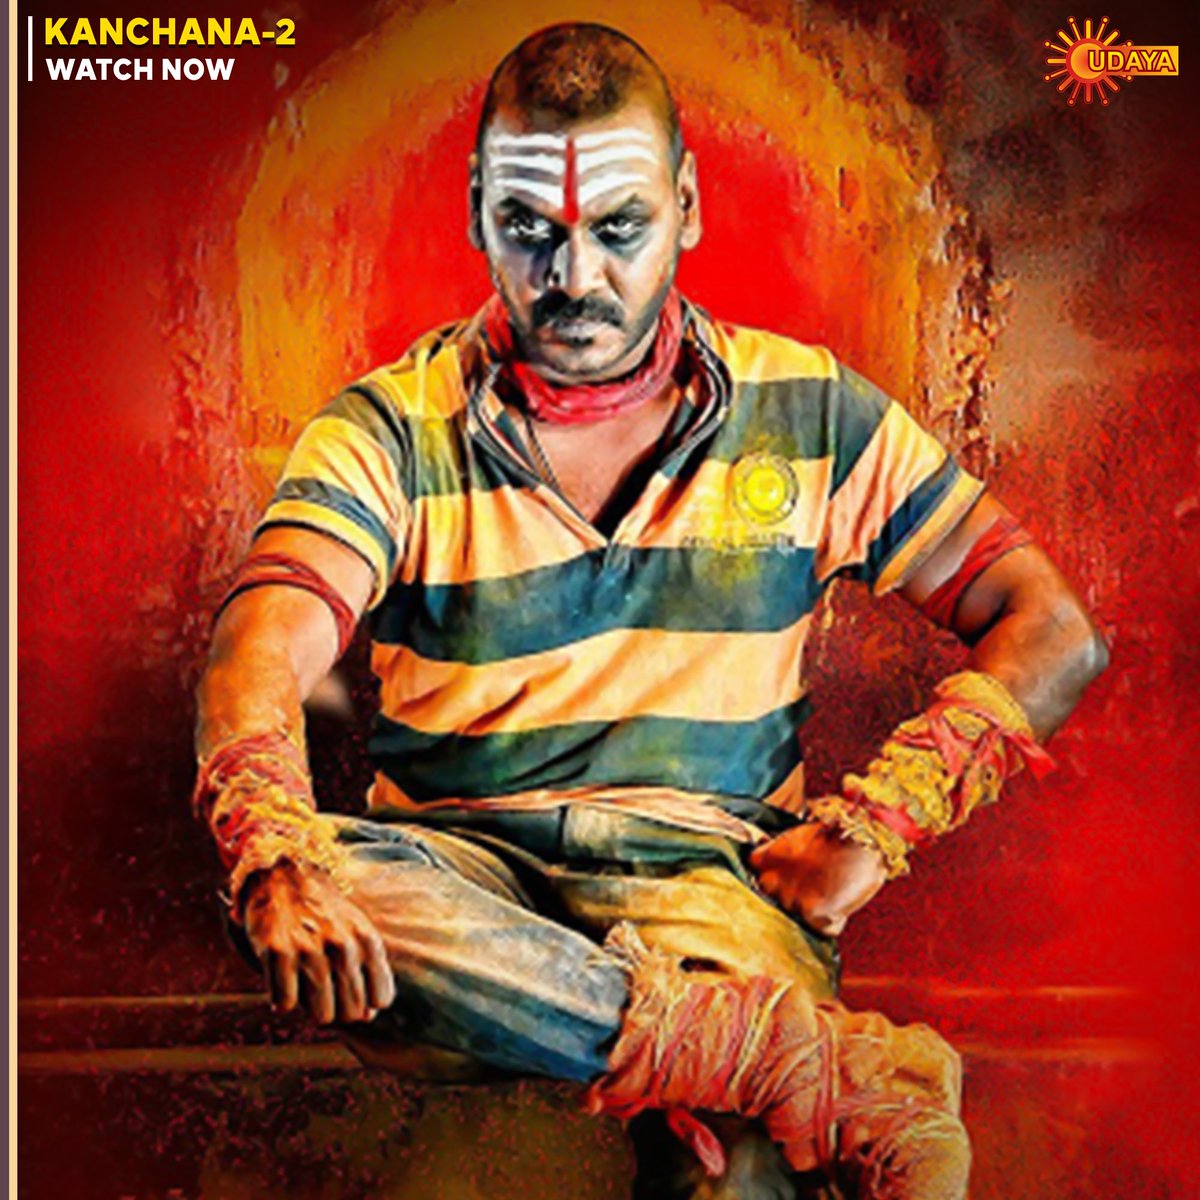 ರಾಘವ ಲಾರೆನ್ಸ್ ಅಭಿನಯದ 'ಕಾಂಚನ-2' ವೀಕ್ಷಿಸಿ ಈಗ ನಿಮ್ಮ ಉದಯ ಟಿ.ವಿಯಲ್ಲಿ.

#Kanchana2 | Watch Now
#UdayaTV #MoviesOnUdayaTV